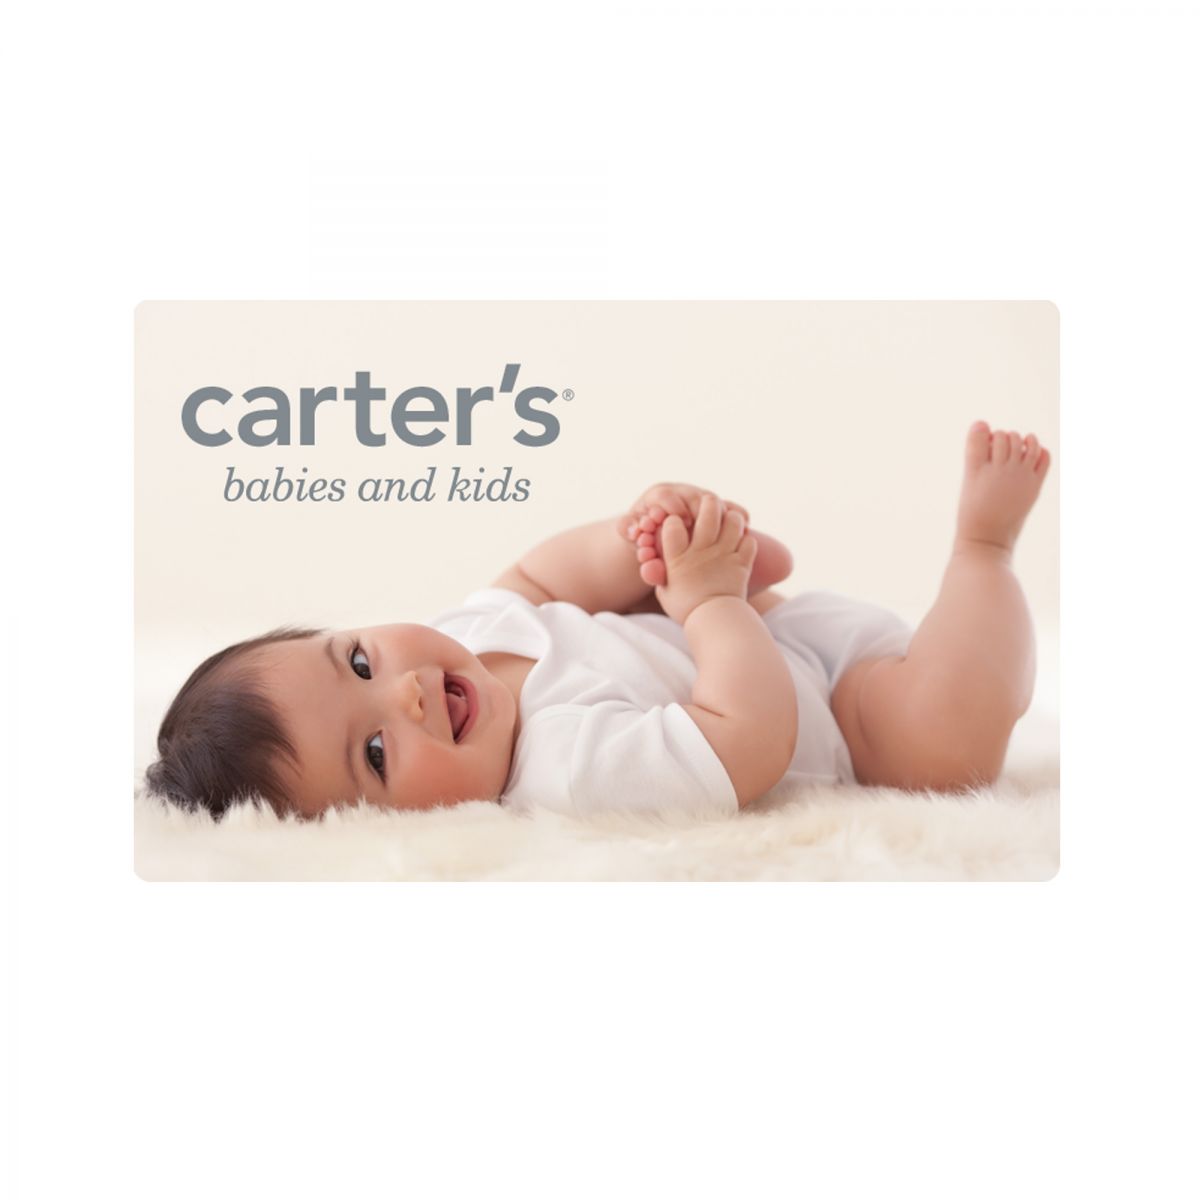 ♥ ❤ Carter’s-Картерс ❤ ♥ - ♥ ❤ МОДНАЯ ДЕТСКАЯ ОДЕЖДА ❤ ♥ Аль